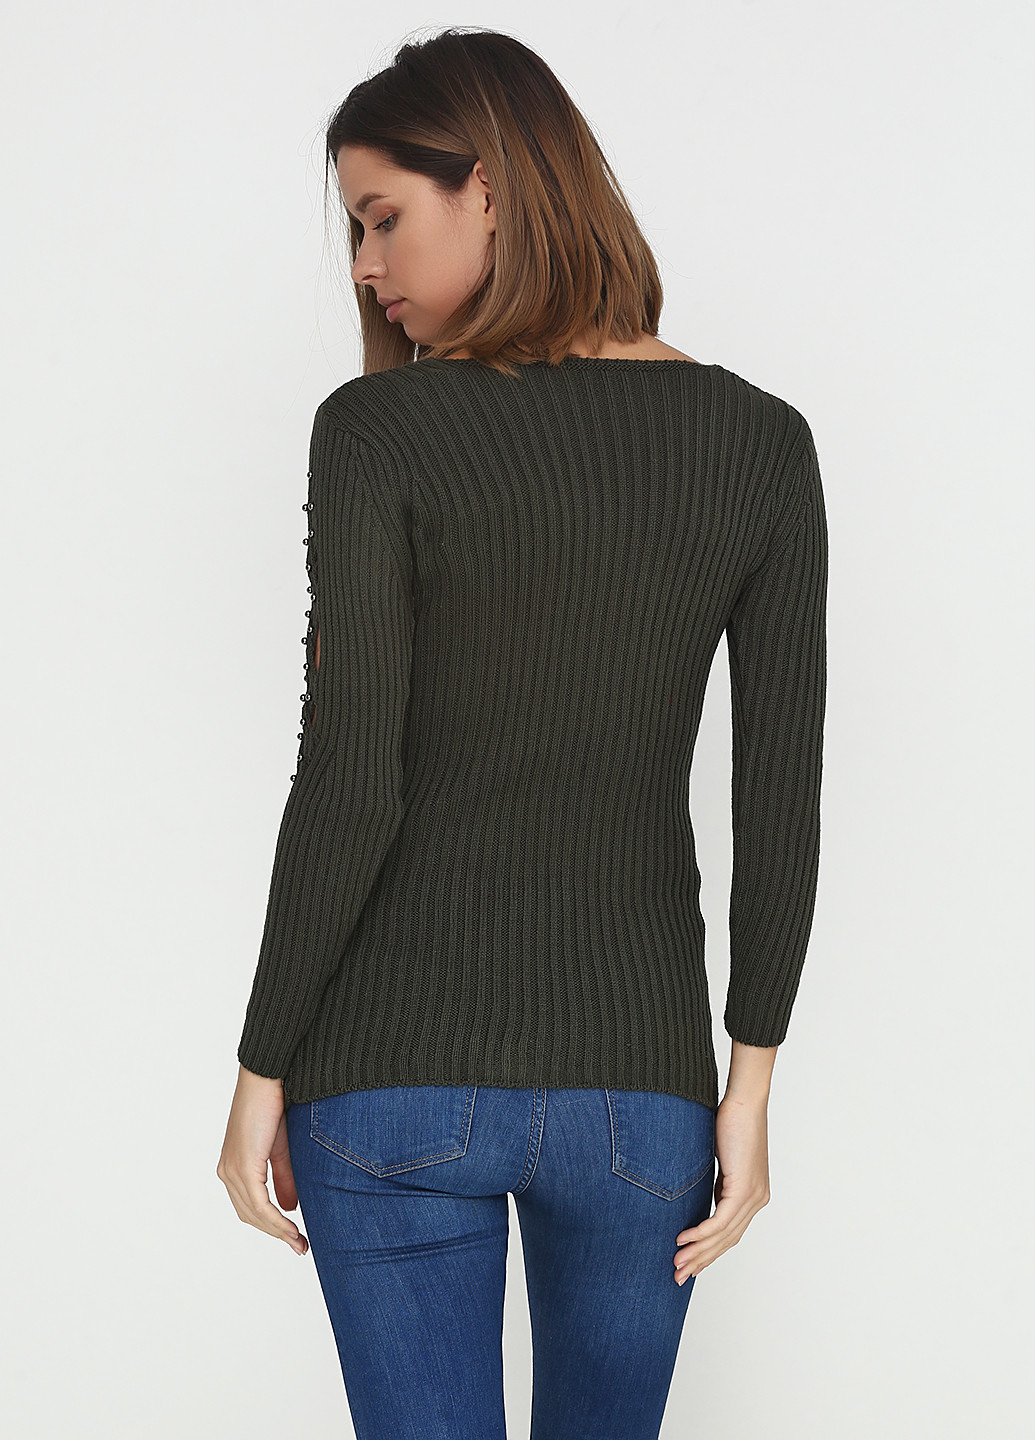 Оливковый (хаки) демисезонный пуловер пуловер Edda